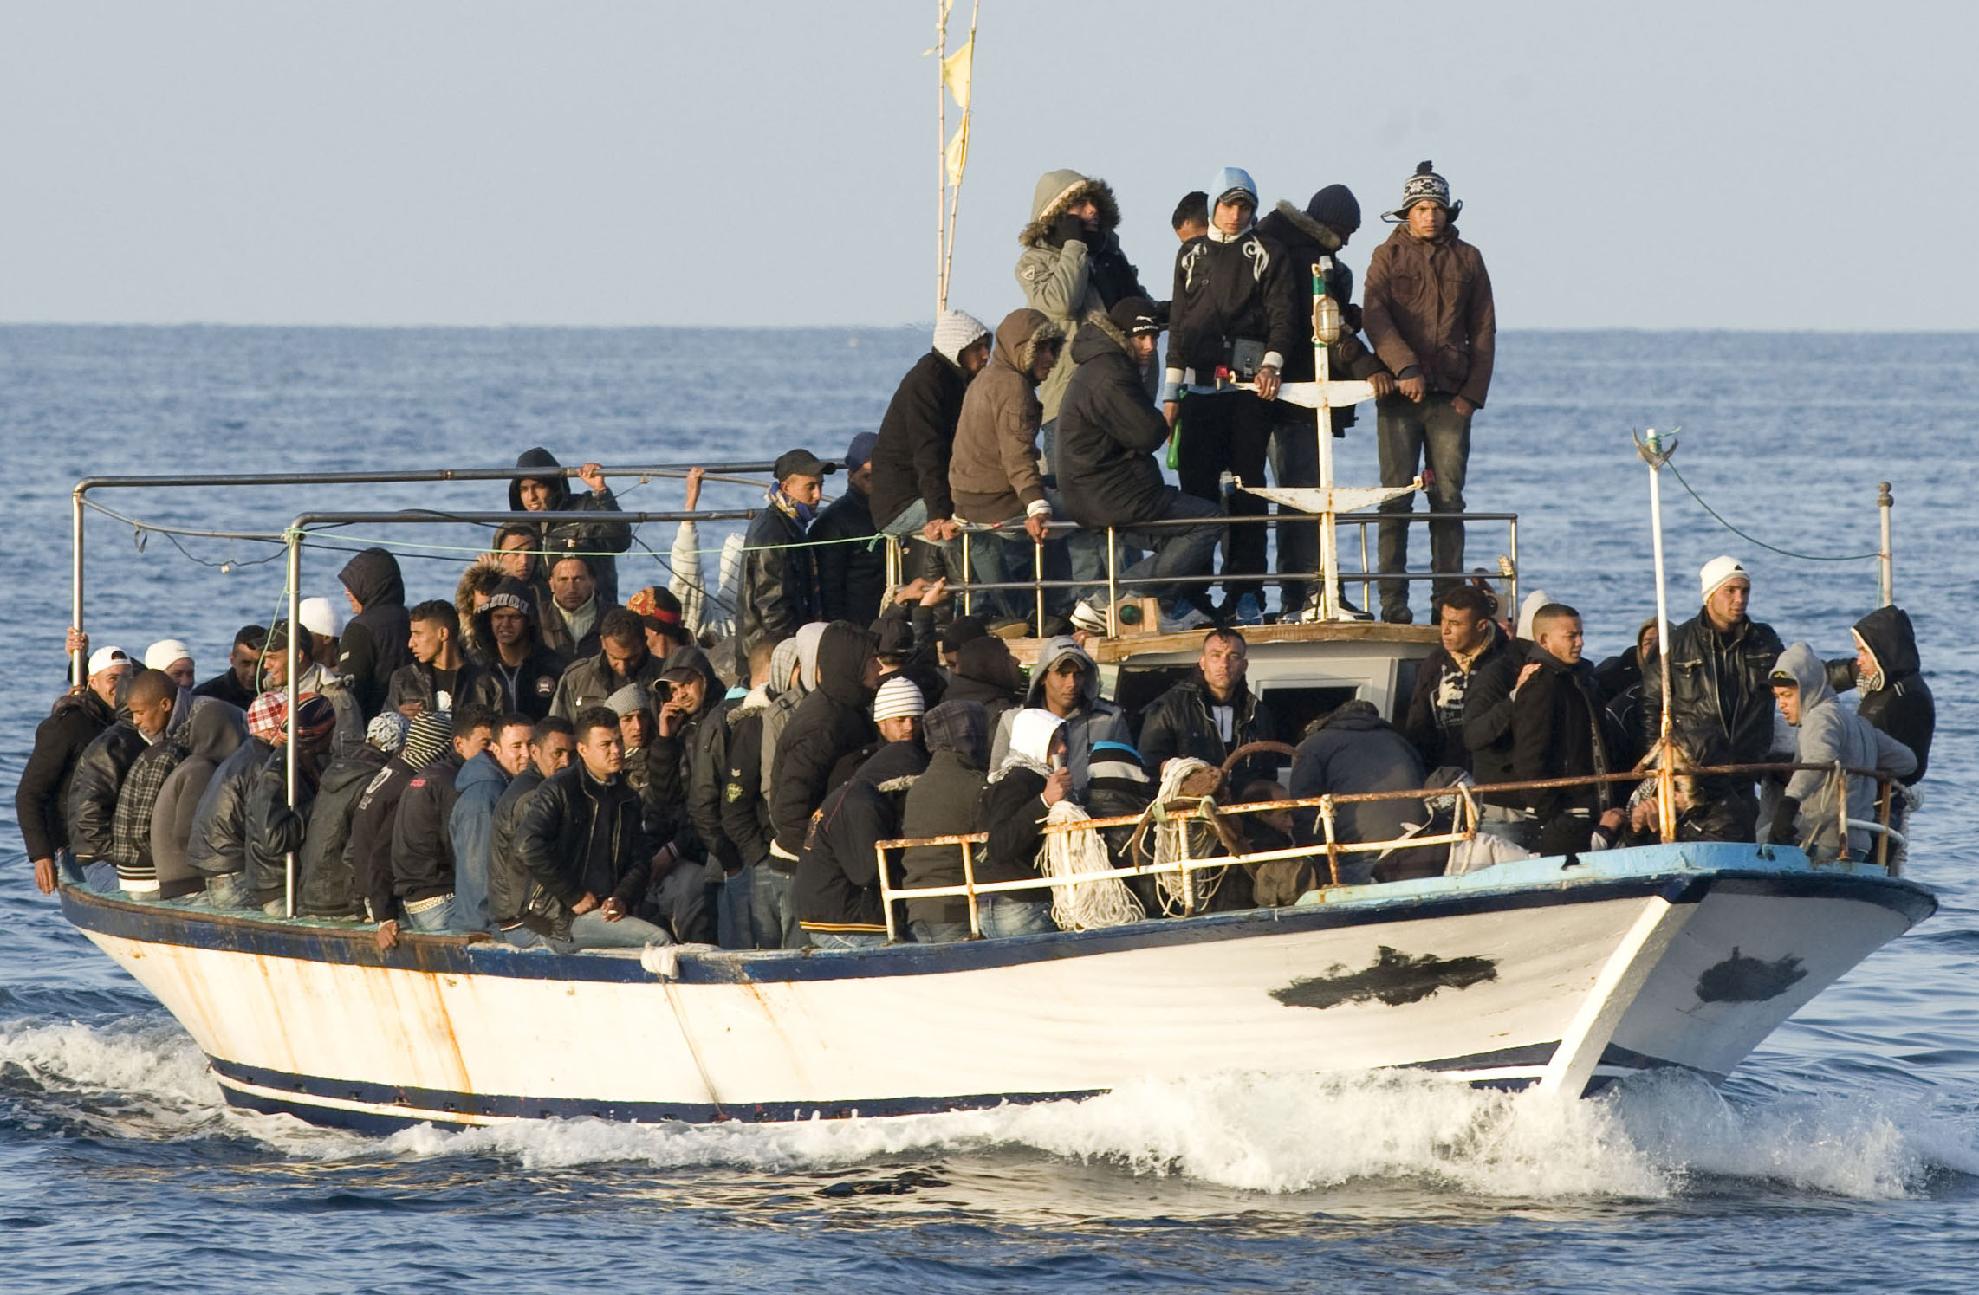 Το Συμβούλιο της Ευρώπης πιέζει την Μάλτα να δεχτεί παράνομους μετανάστες στο έδαφός της!